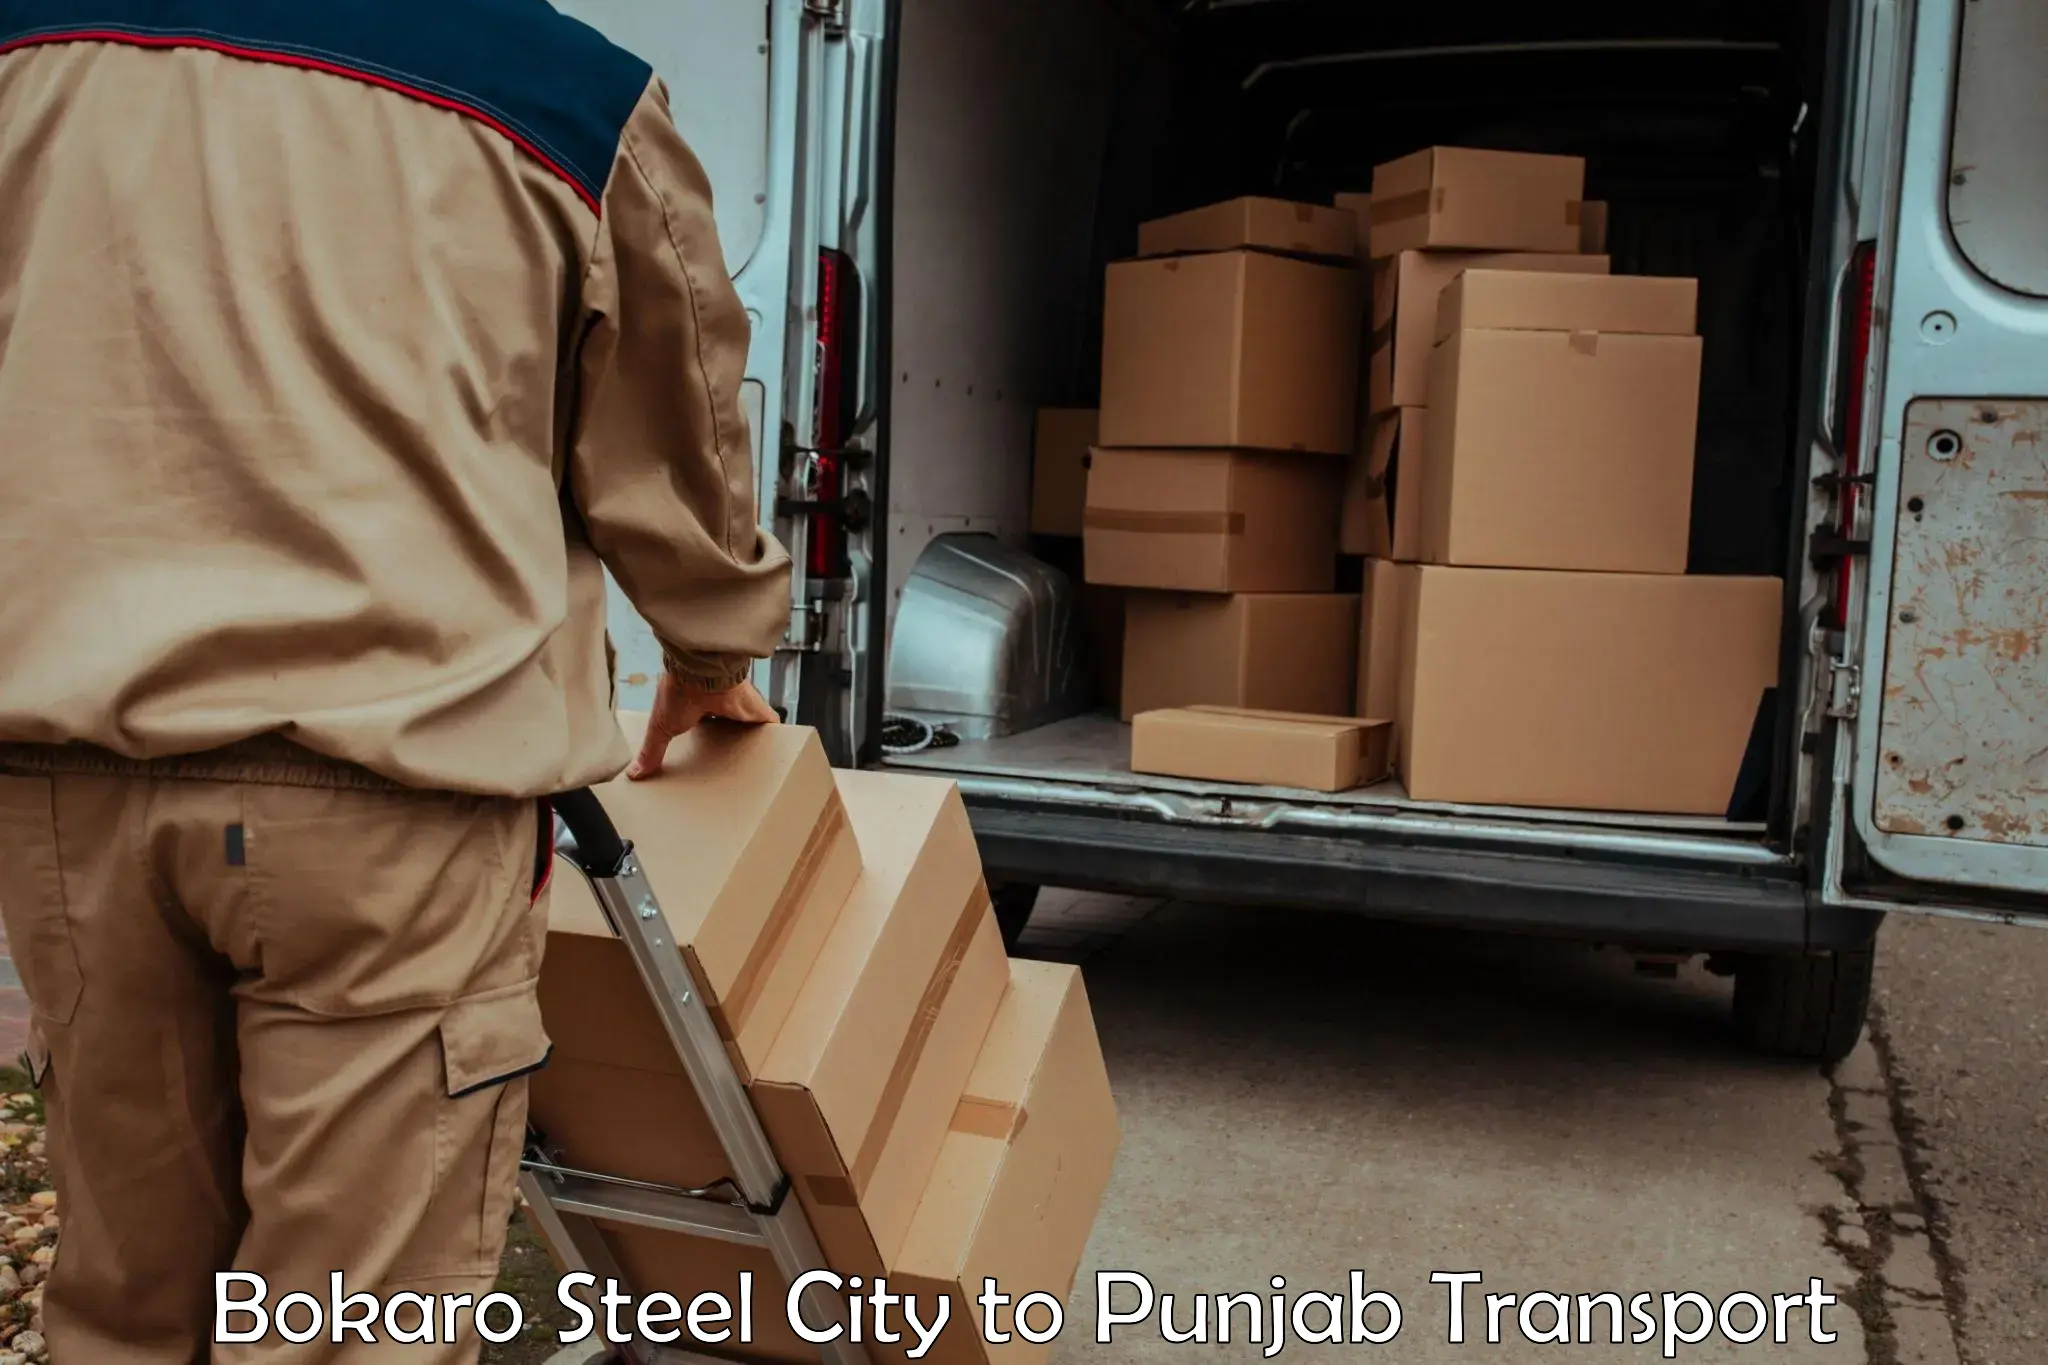 Bike shipping service Bokaro Steel City to Punjab